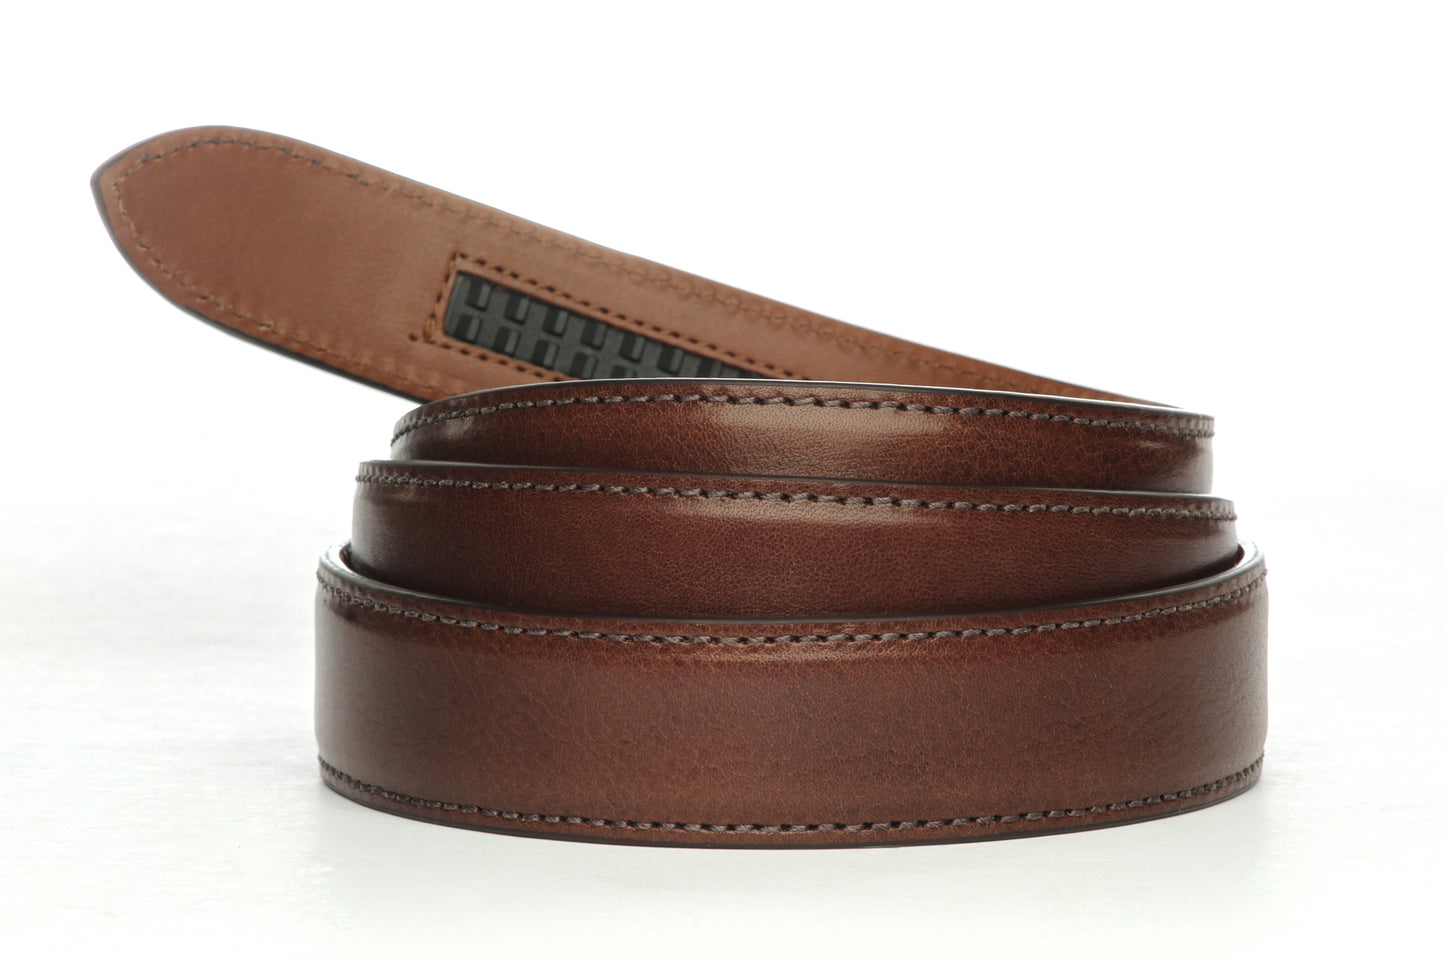 Men's Italian calfskin belt strap in brown with a 1.25-inch width, formal look, full roll